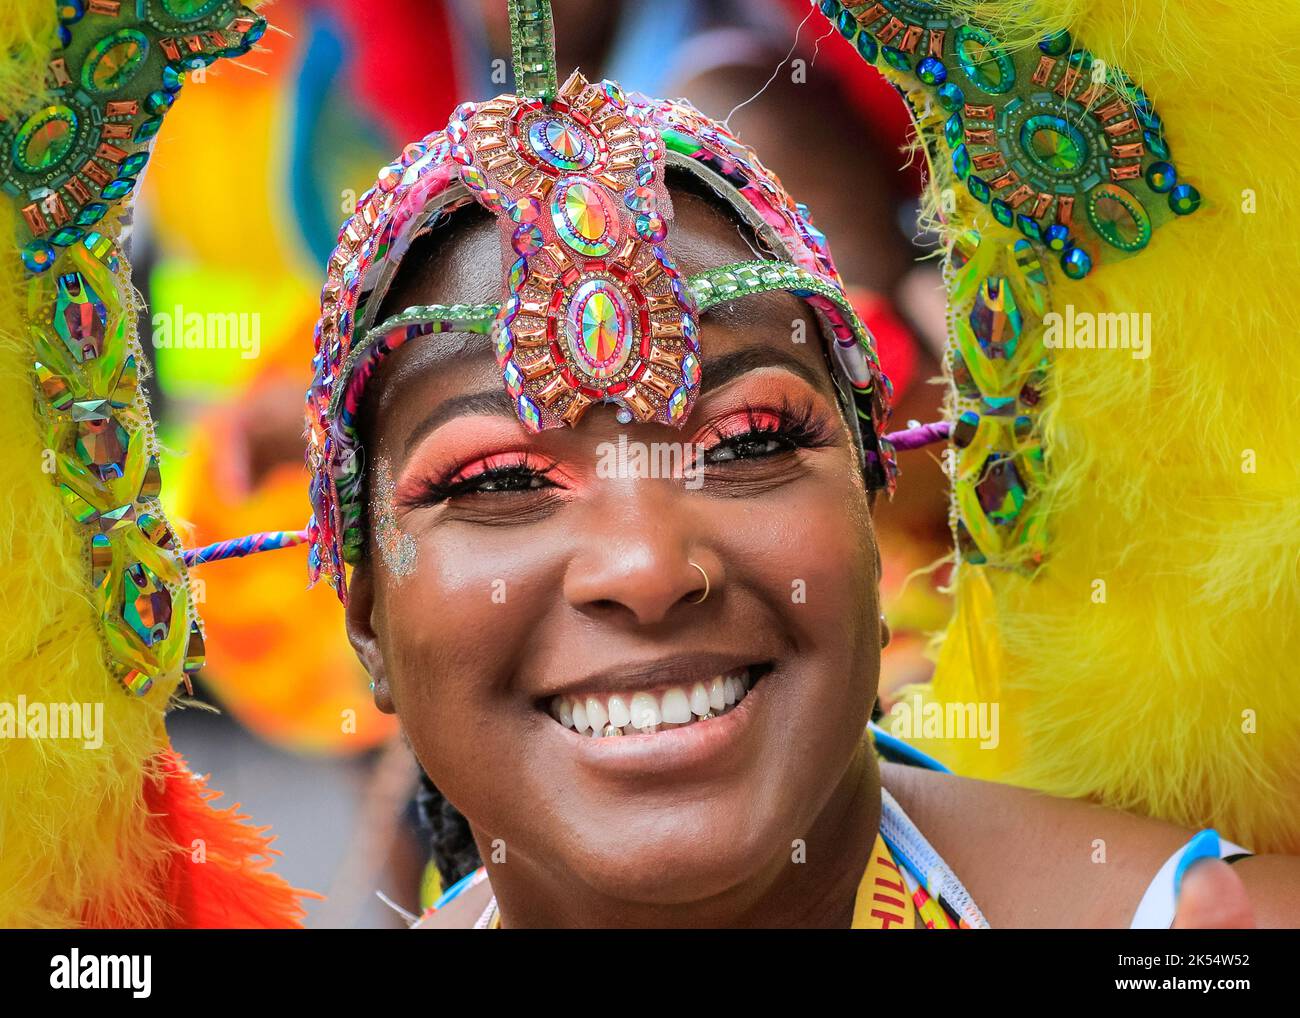 Donna afro-caraibica sorridente, faccia in primo piano, partecipante in costume al Notting Hill Carnival, Londra, Inghilterra Foto Stock